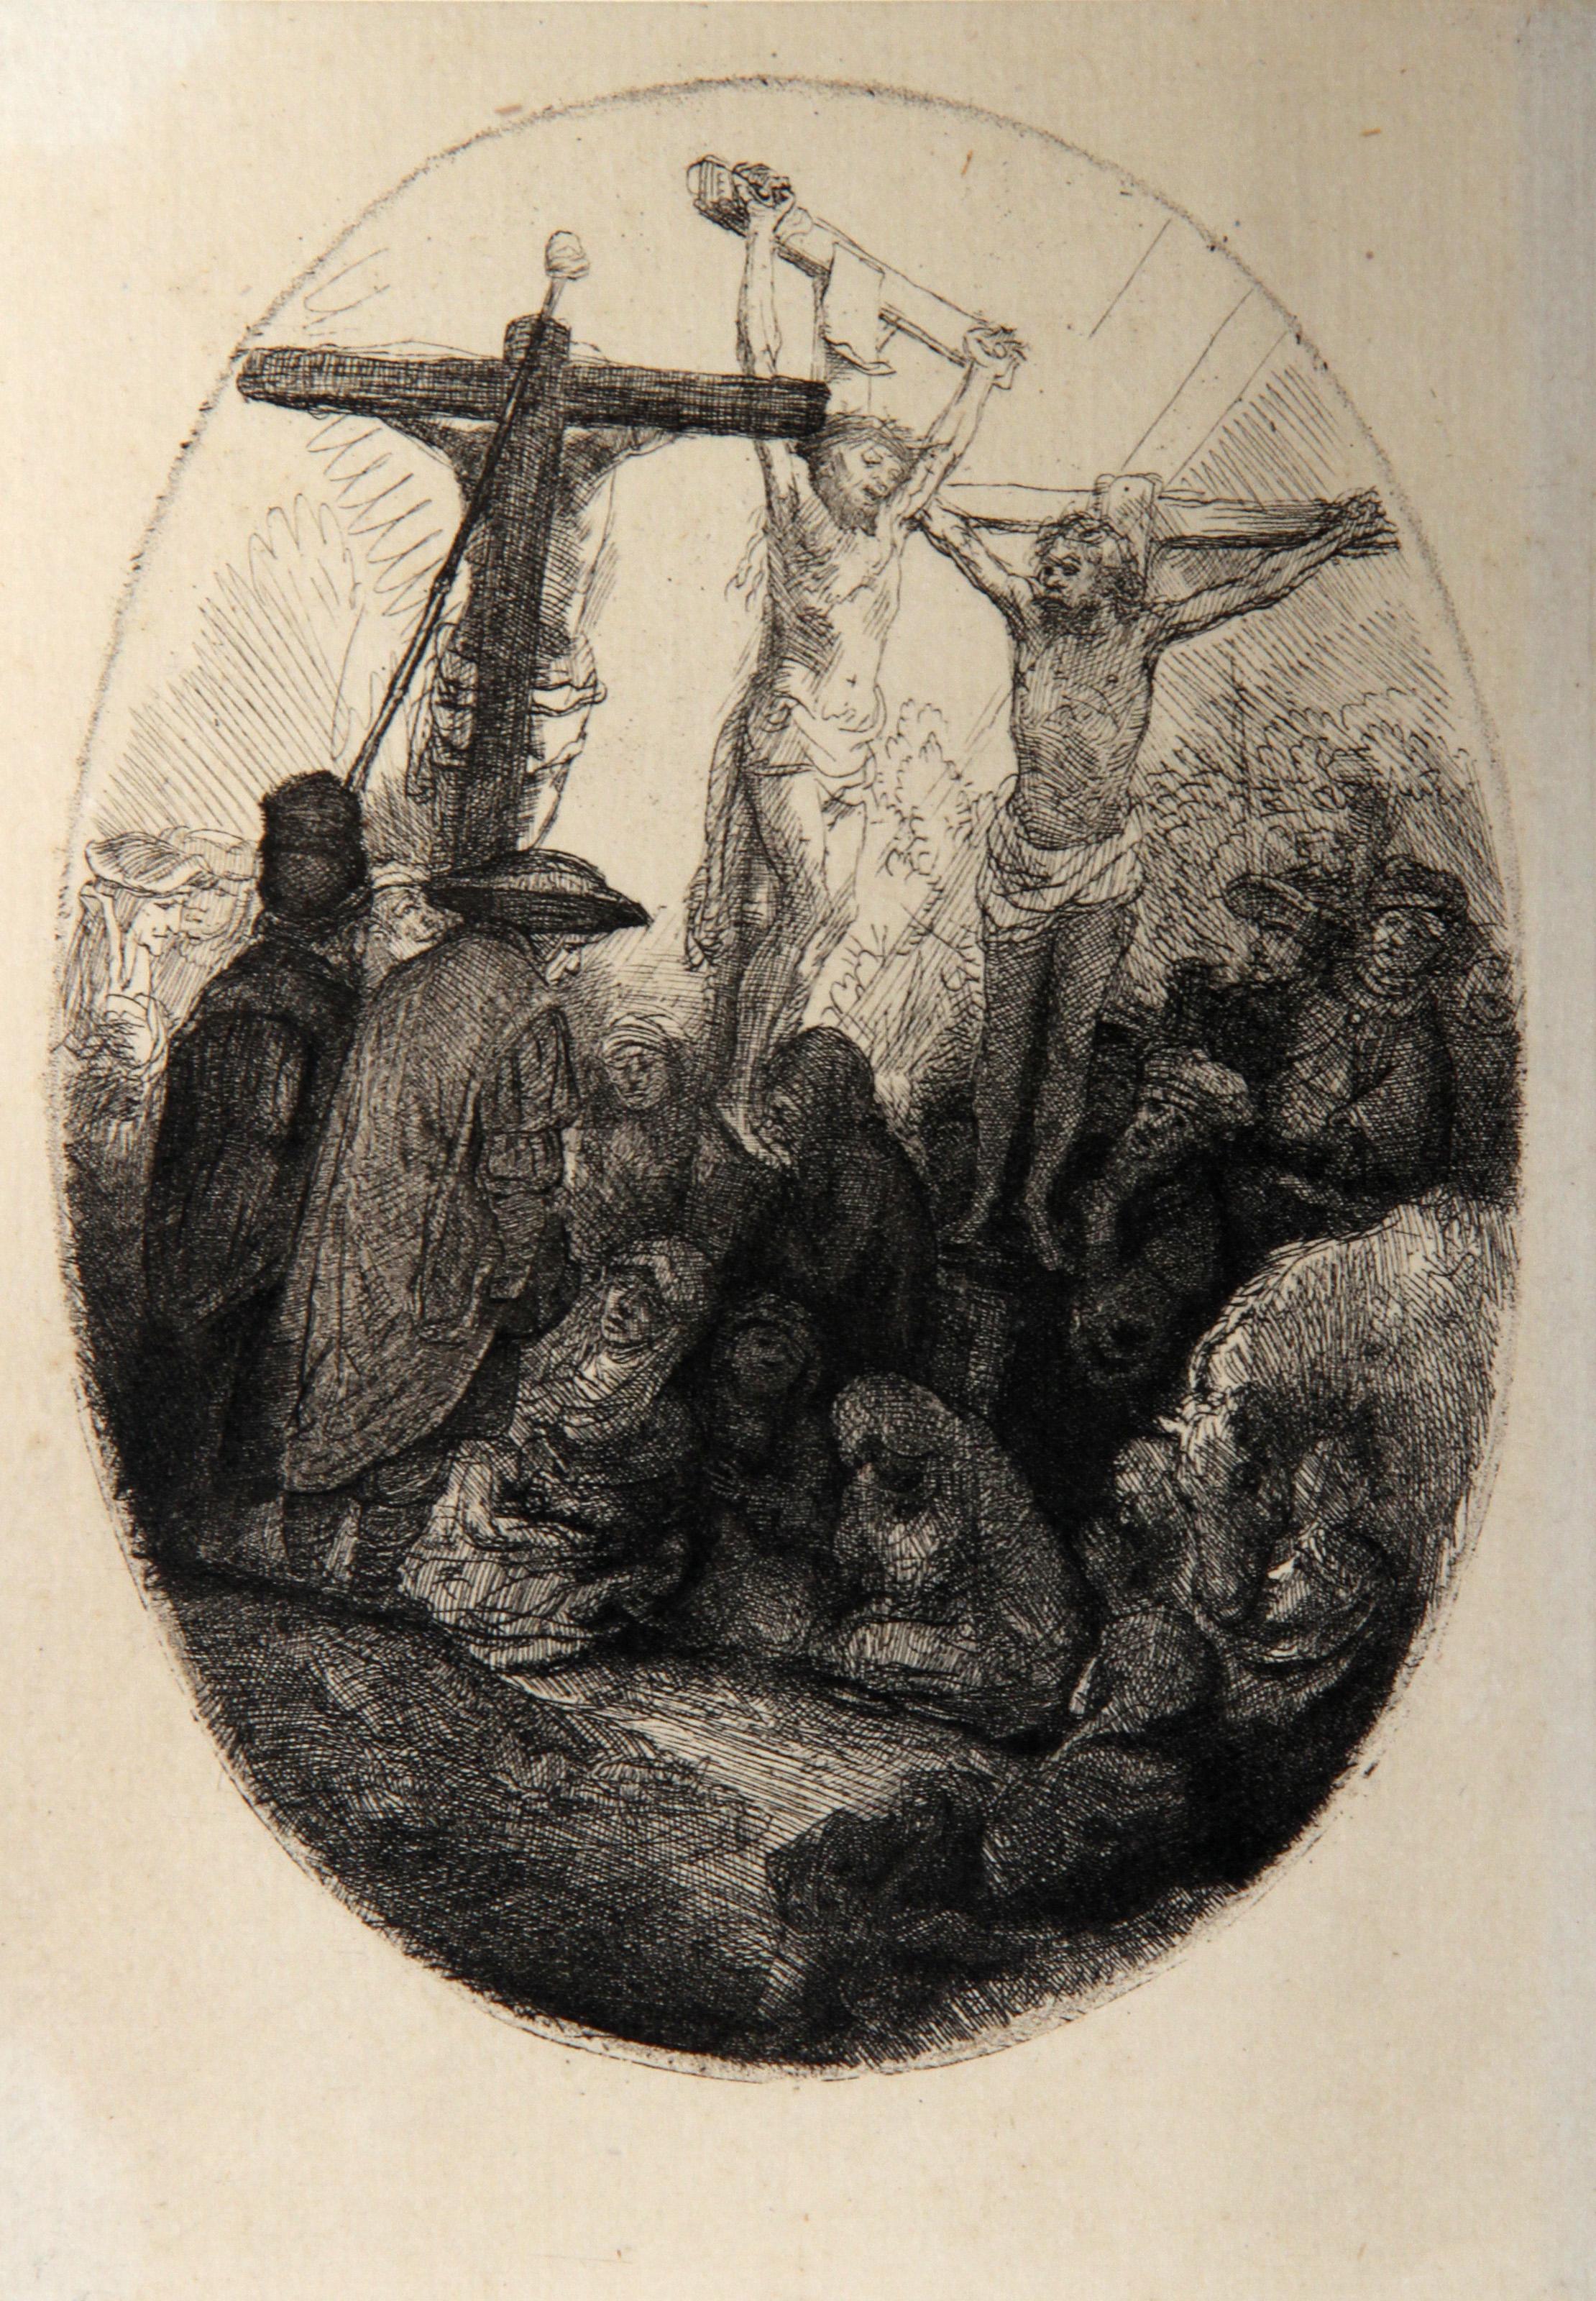 Rembrandt van Rijn Print - Jesus en Croix Entre Deux Larrons (B79), Heliogravure on laid paper by Rembrandt